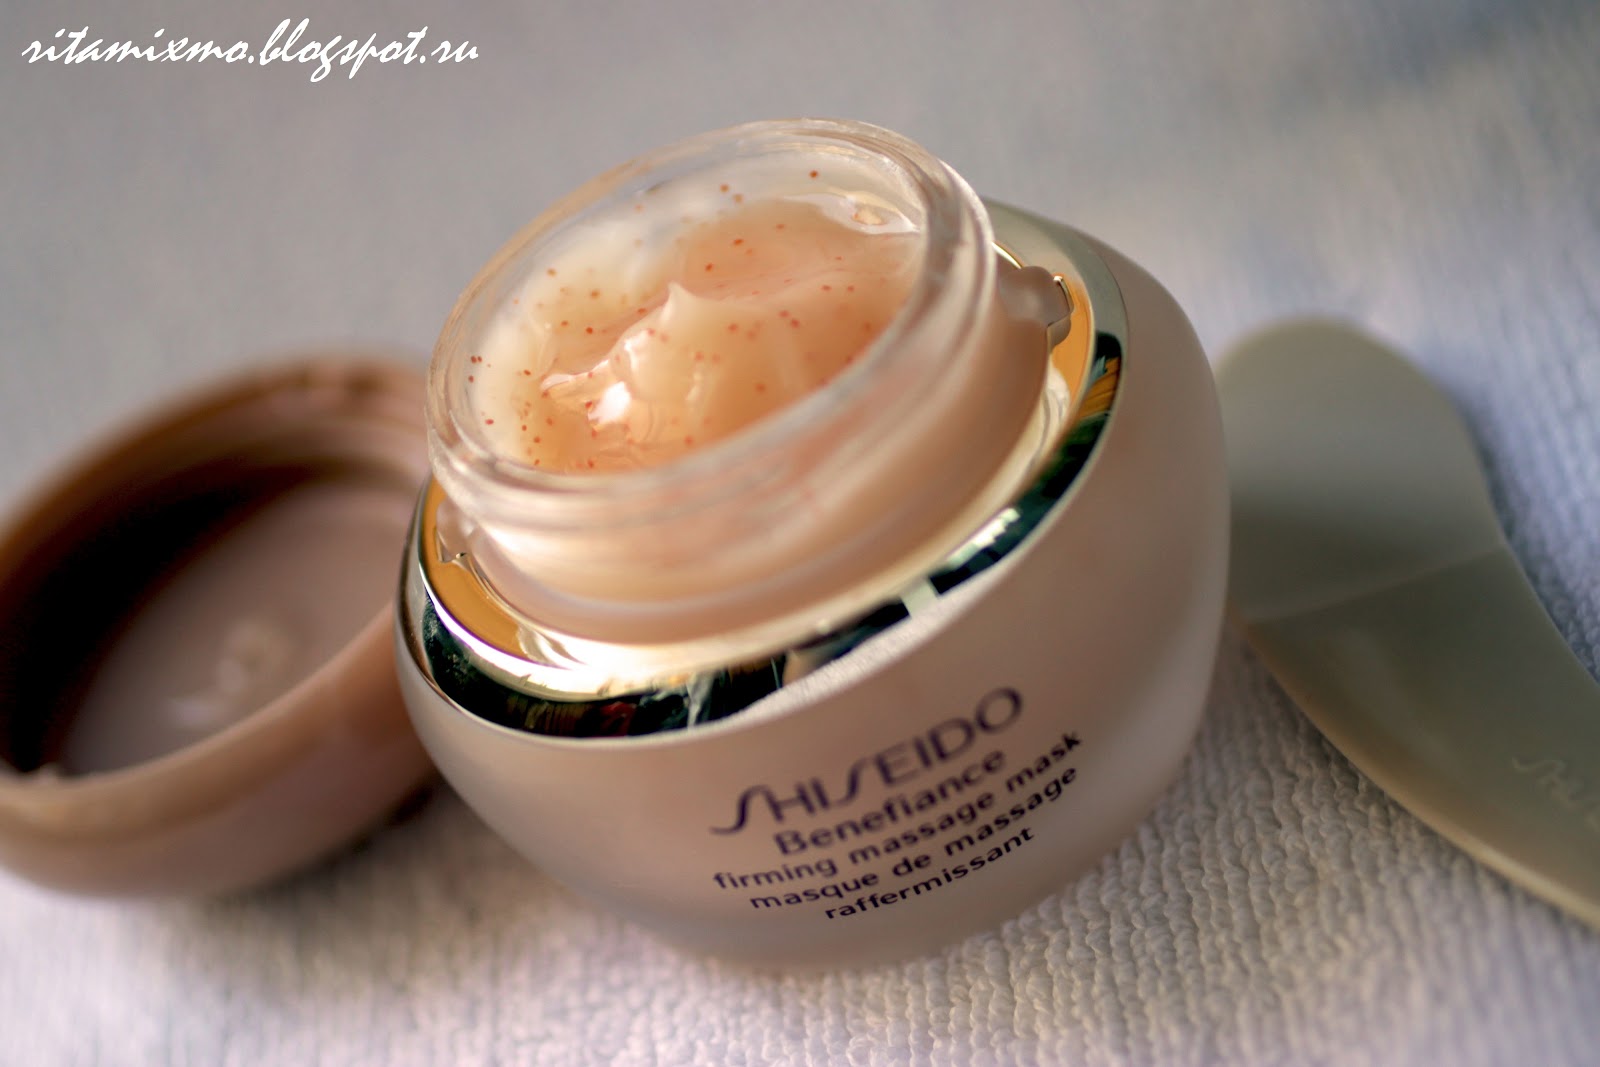 Shiseido firming. Benefiance Firming massage Mask — Shiseido. Шисейдо маска для лица. Shiseido Firming massage Mask. Shiseido и Mac.